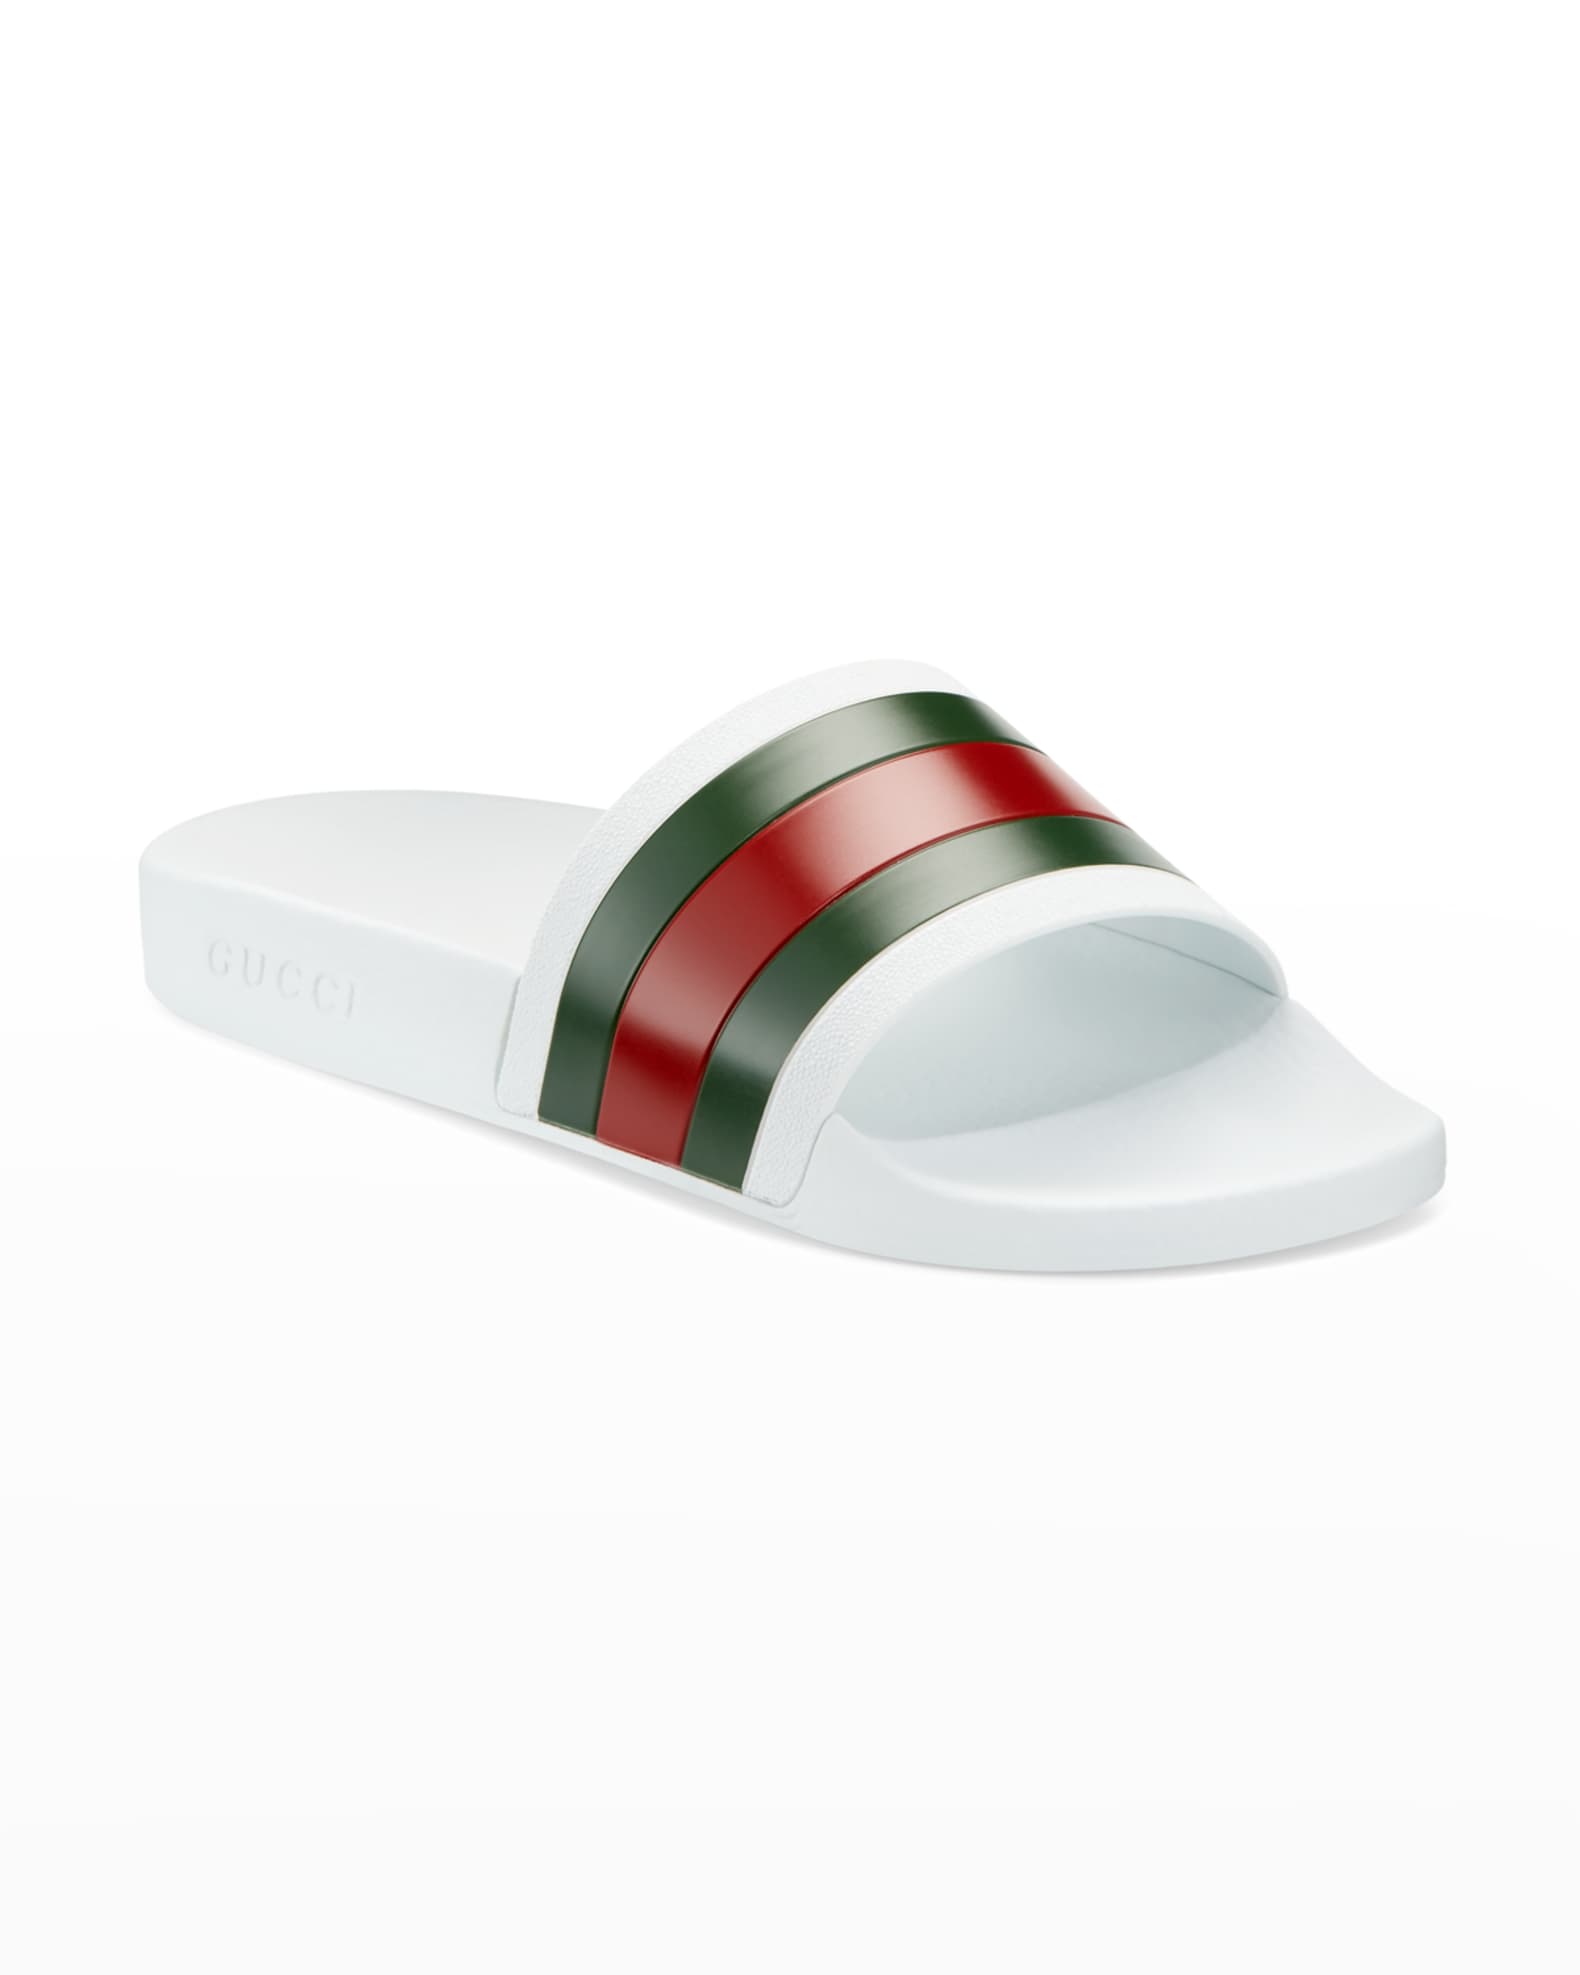 Gucci Pursuit '72 Rubber Slide Sandals | Neiman Marcus